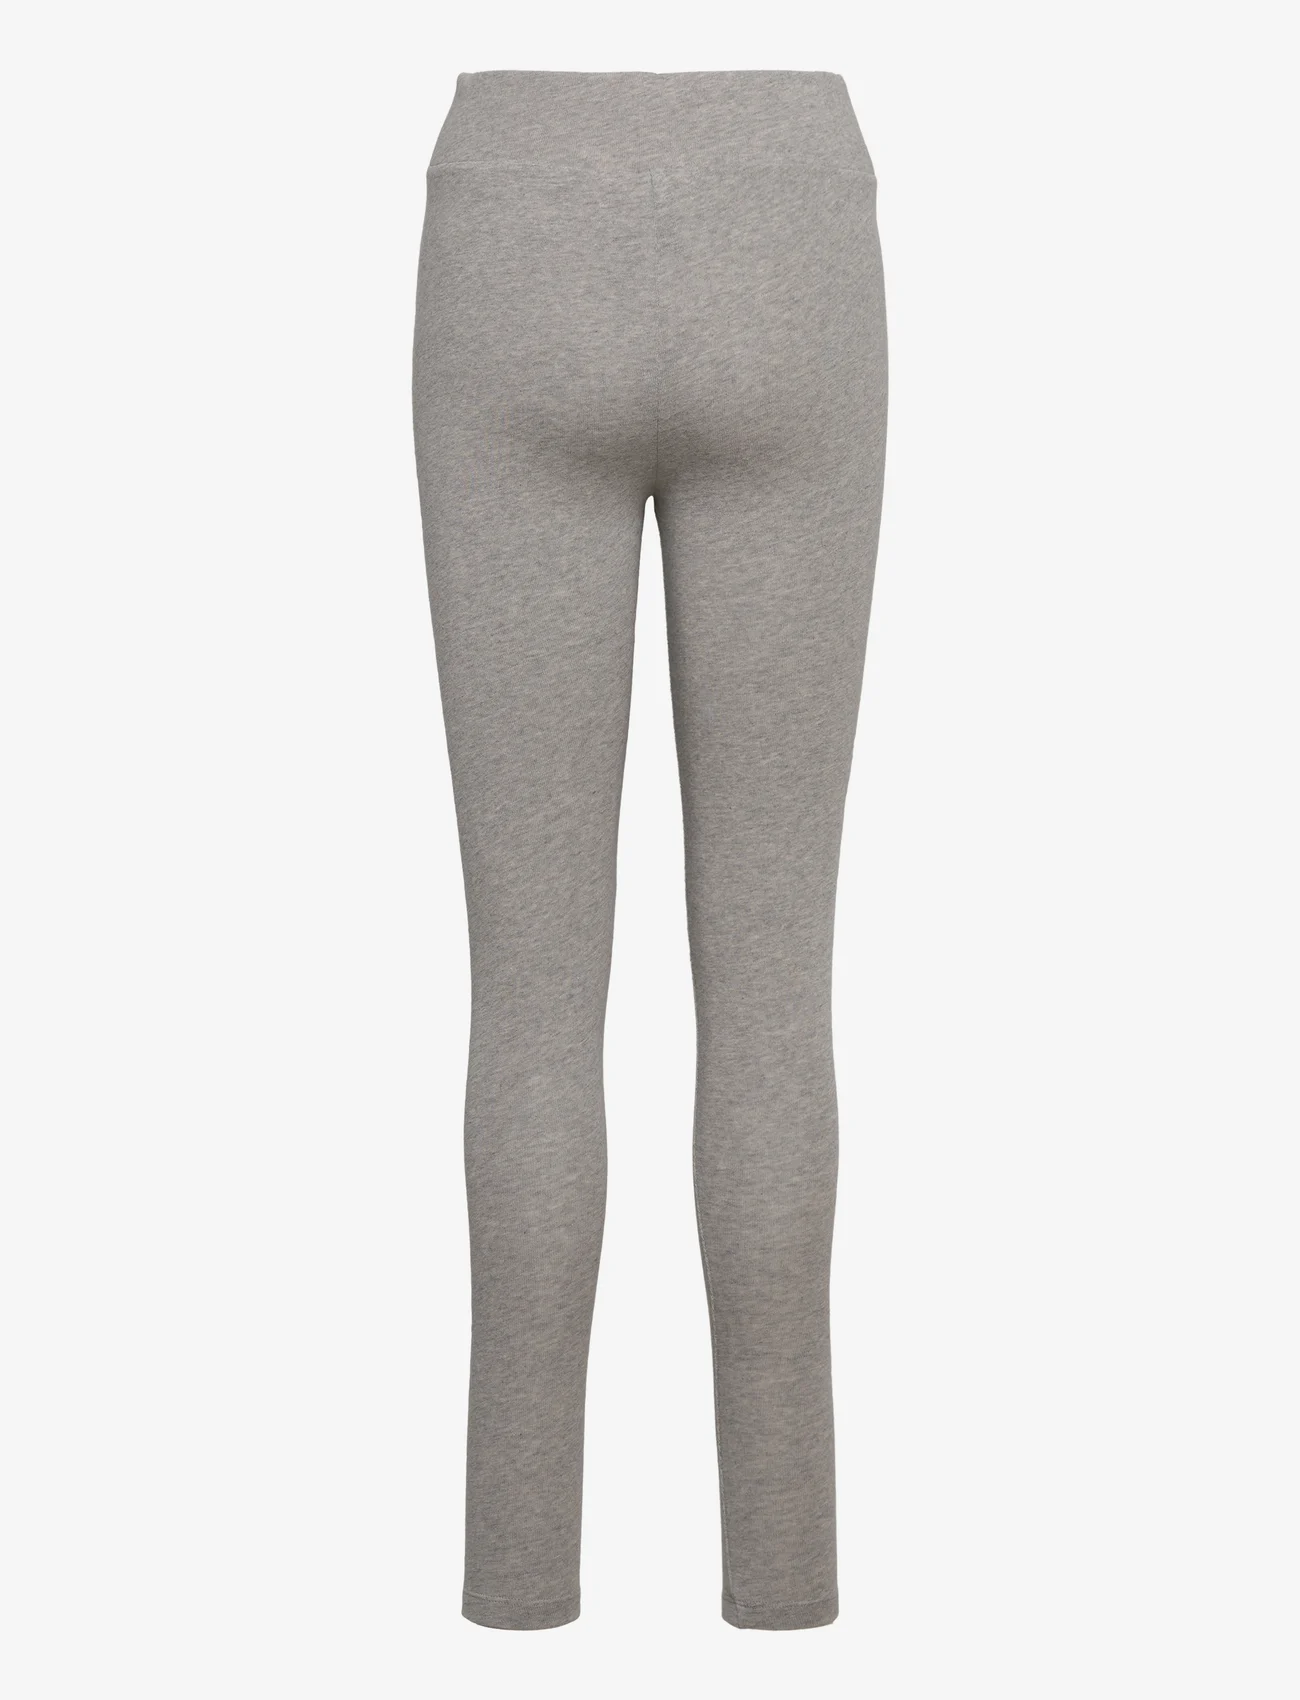 Basic Apparel - Anni soft leggings GOTS - legingi - grey mel. - 1